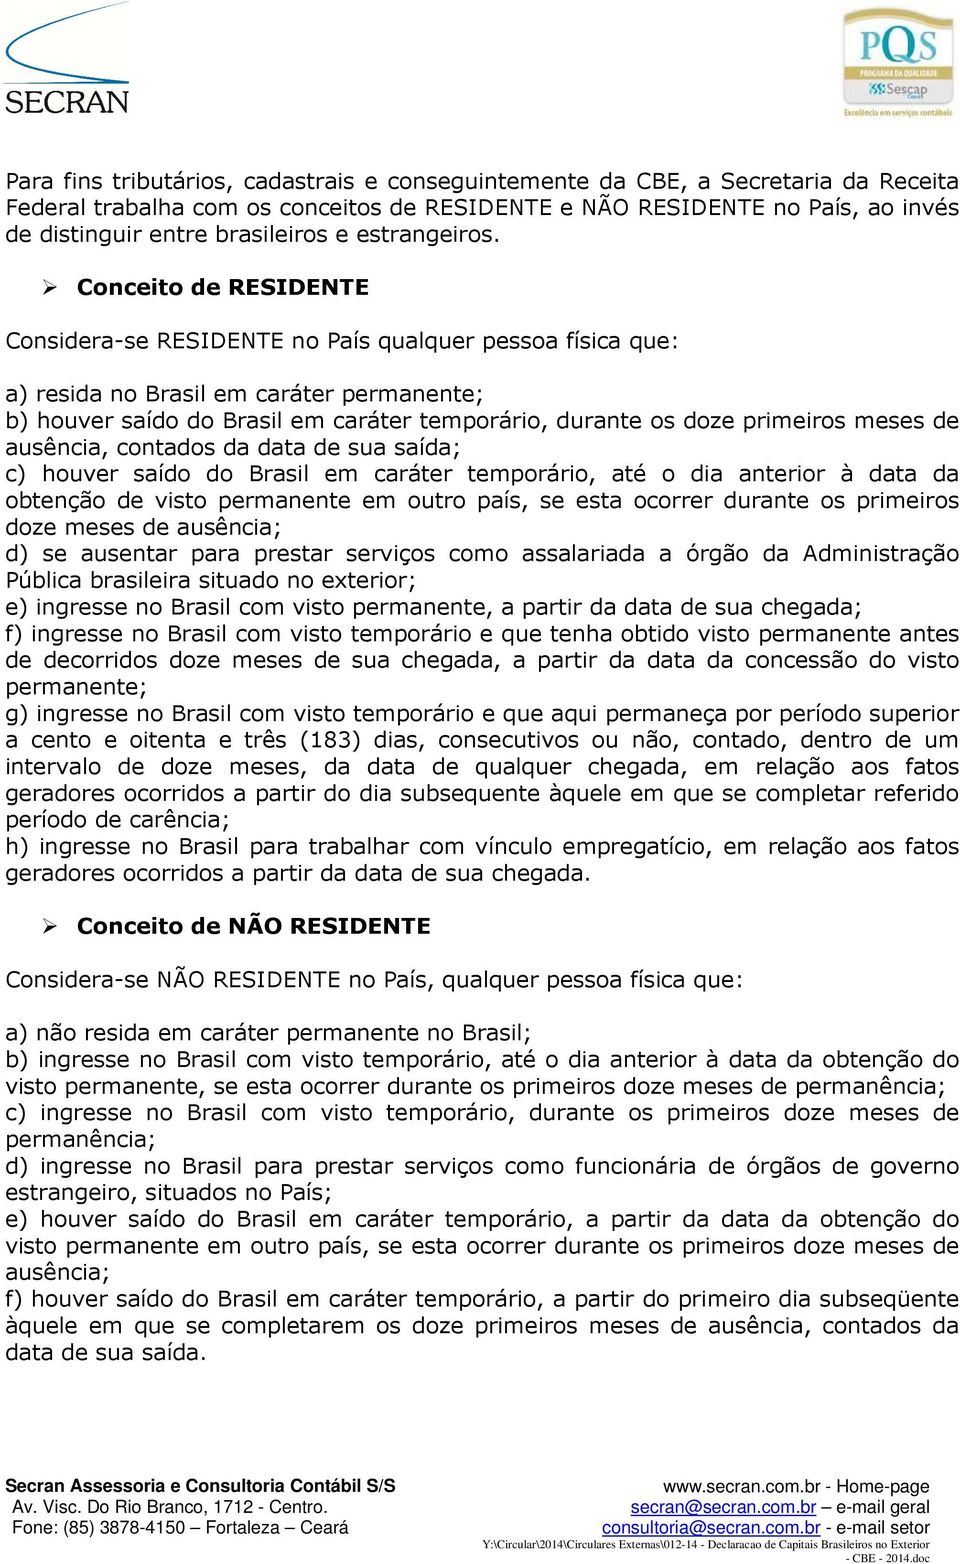 Conceito de RESIDENTE Considera-se RESIDENTE no País qualquer pessoa física que: a) resida no Brasil em caráter permanente; b) houver saído do Brasil em caráter temporário, durante os doze primeiros